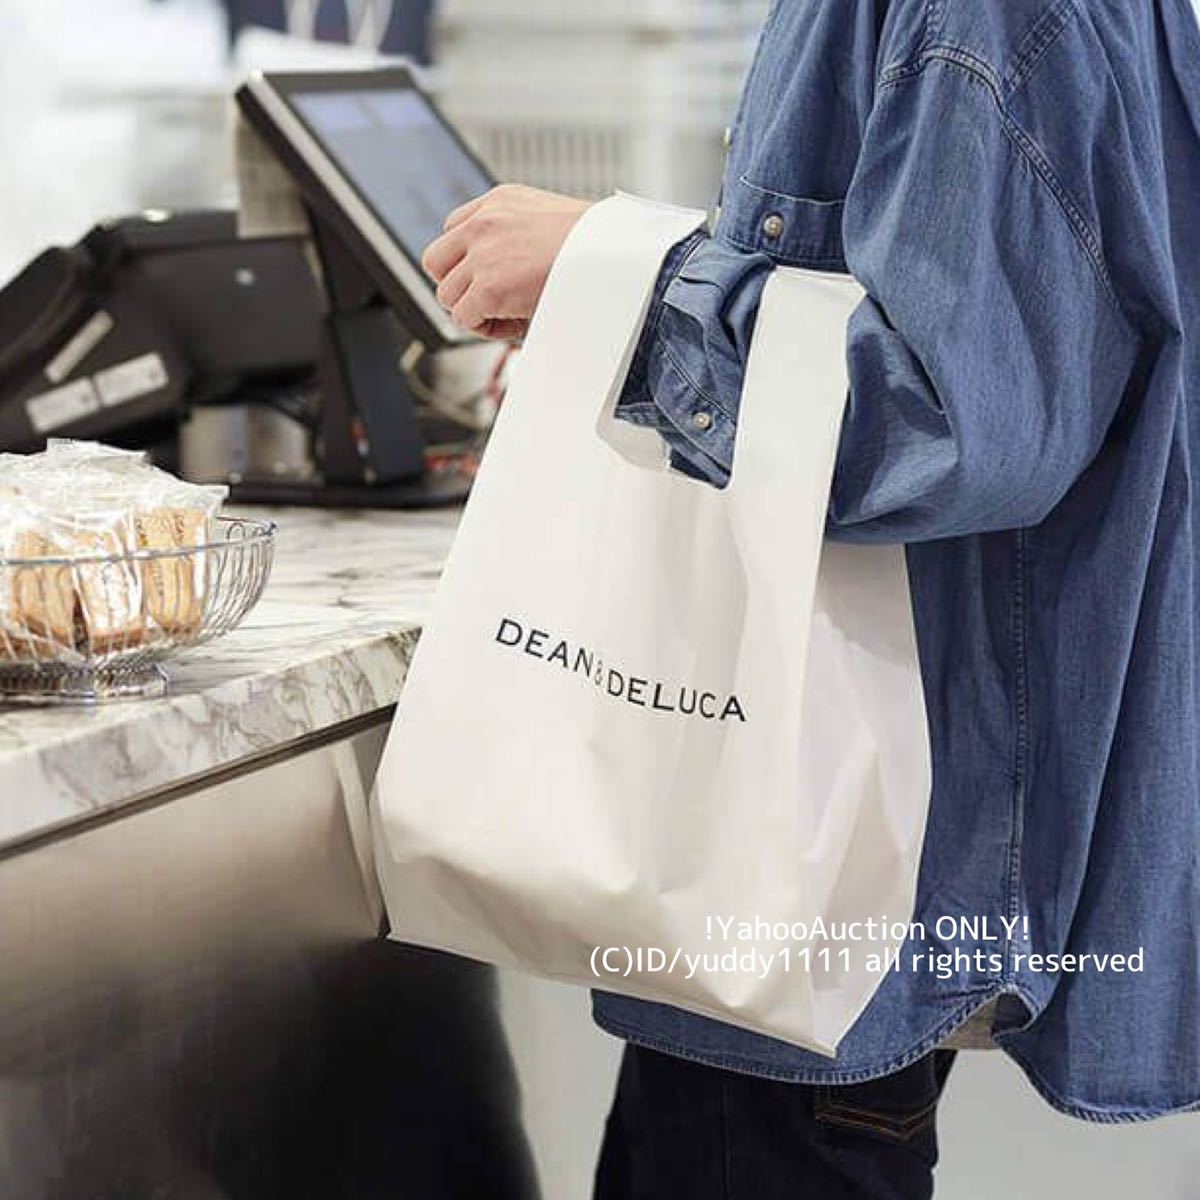  новый товар нераспечатанный DEAN & DELUCA Dean and Dell -ka Minimum эко-сумка белый быстрое решение 